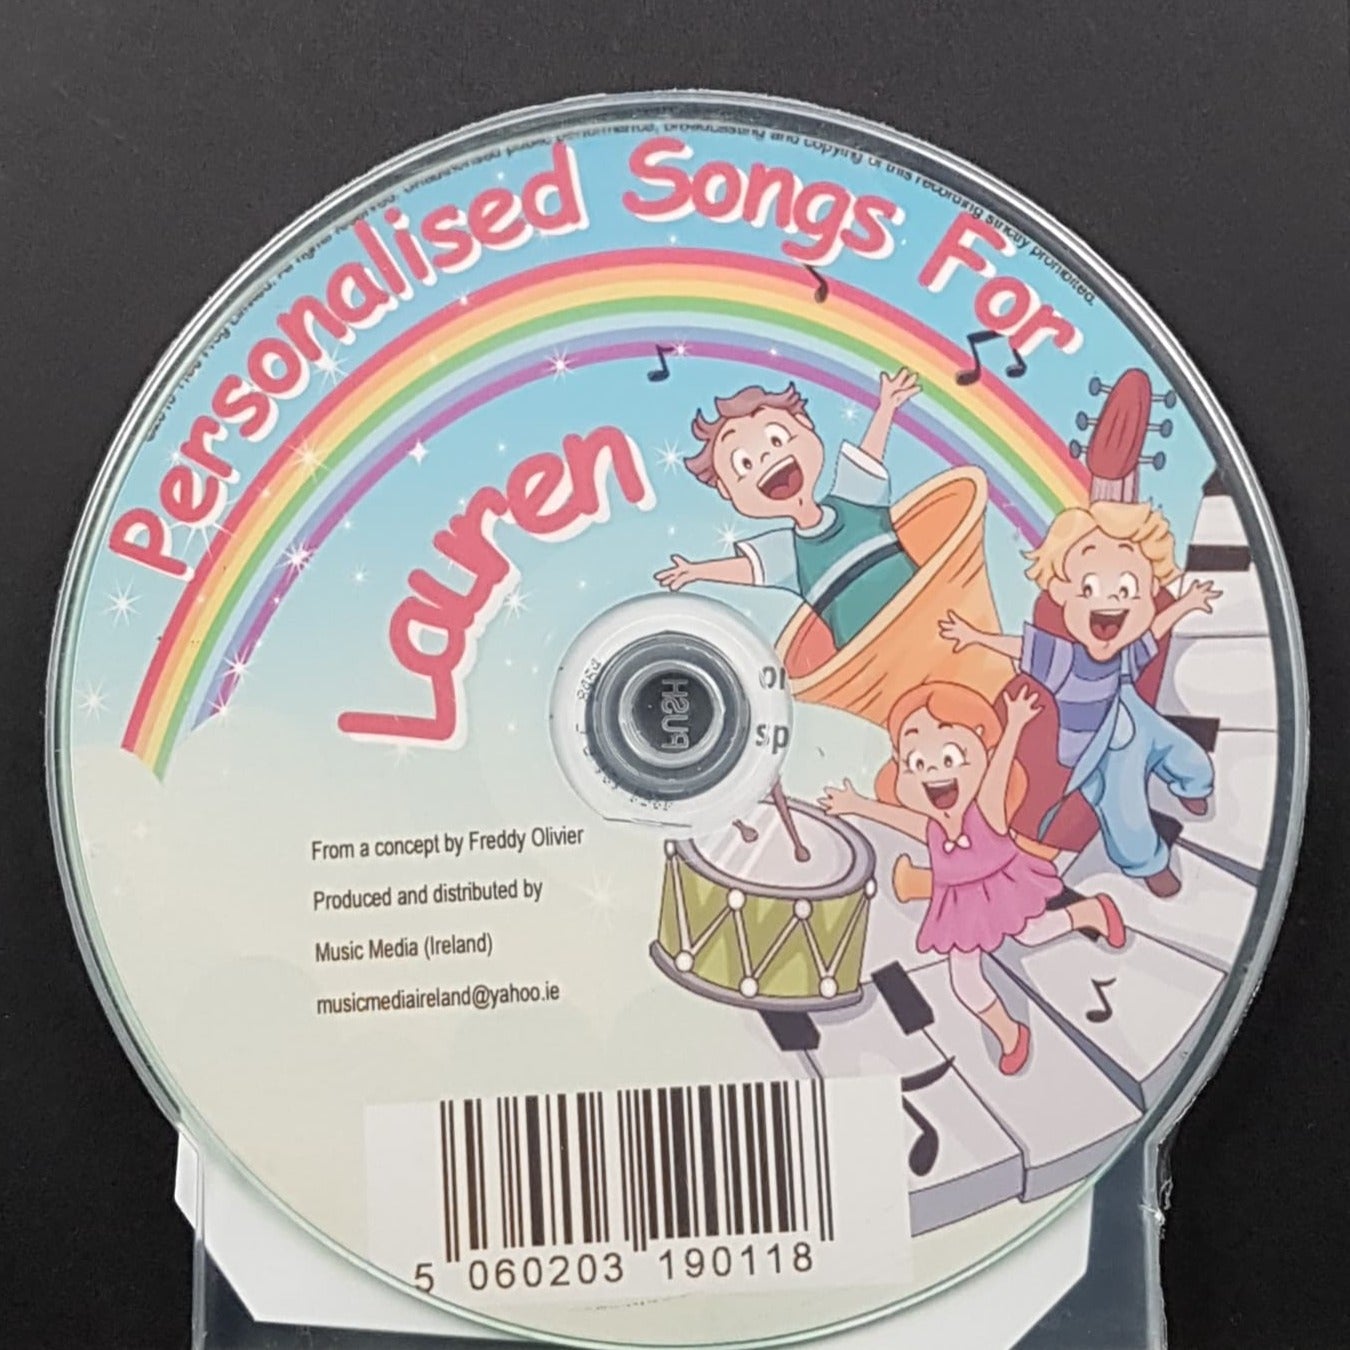 CD - Personalised Children's Songs / Lauren